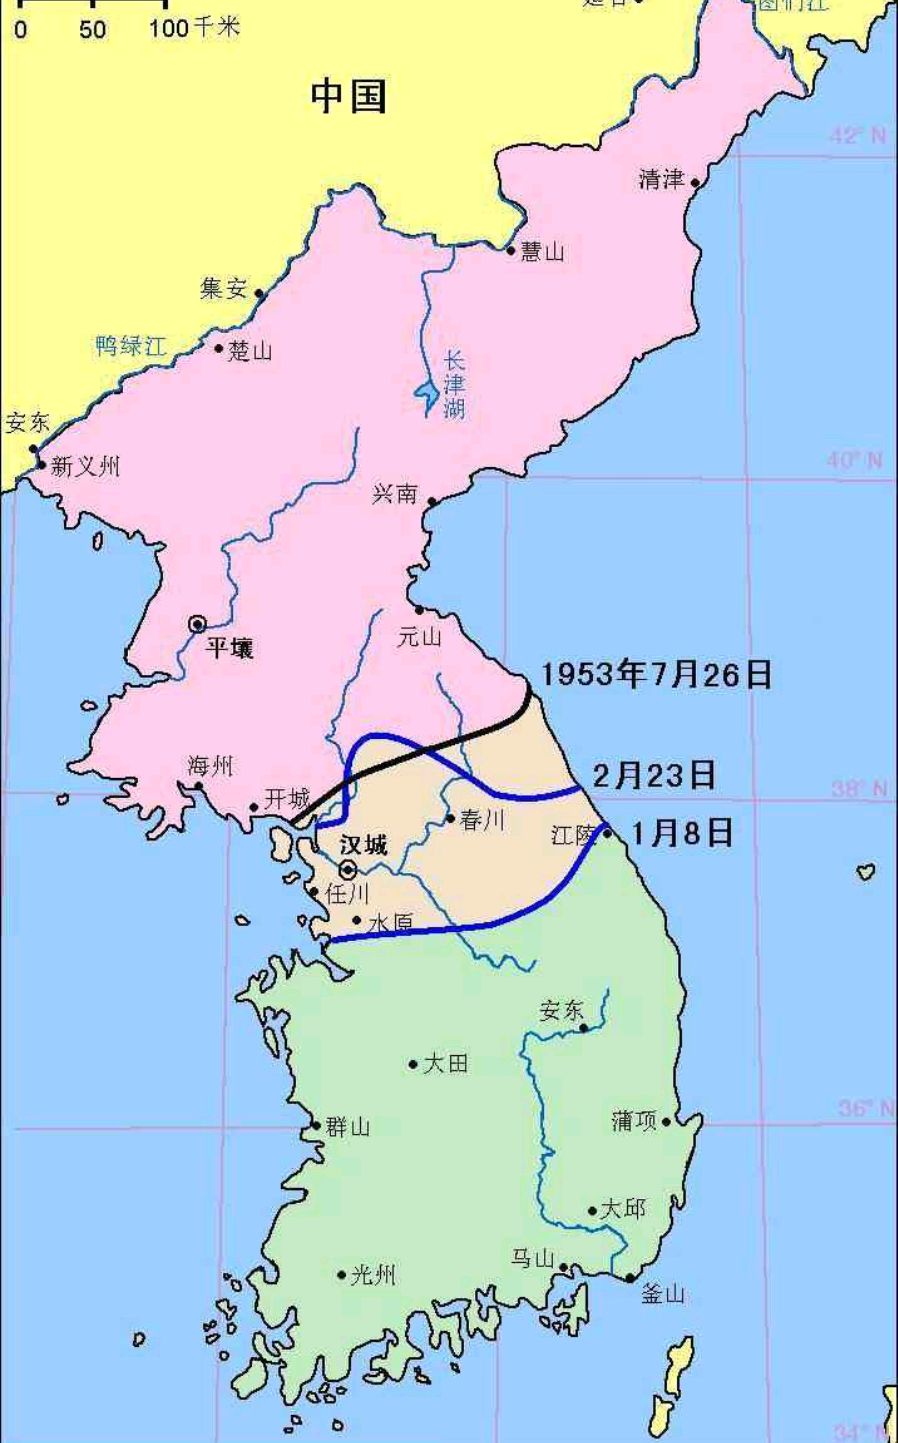 抗美援朝时朝鲜地图图片